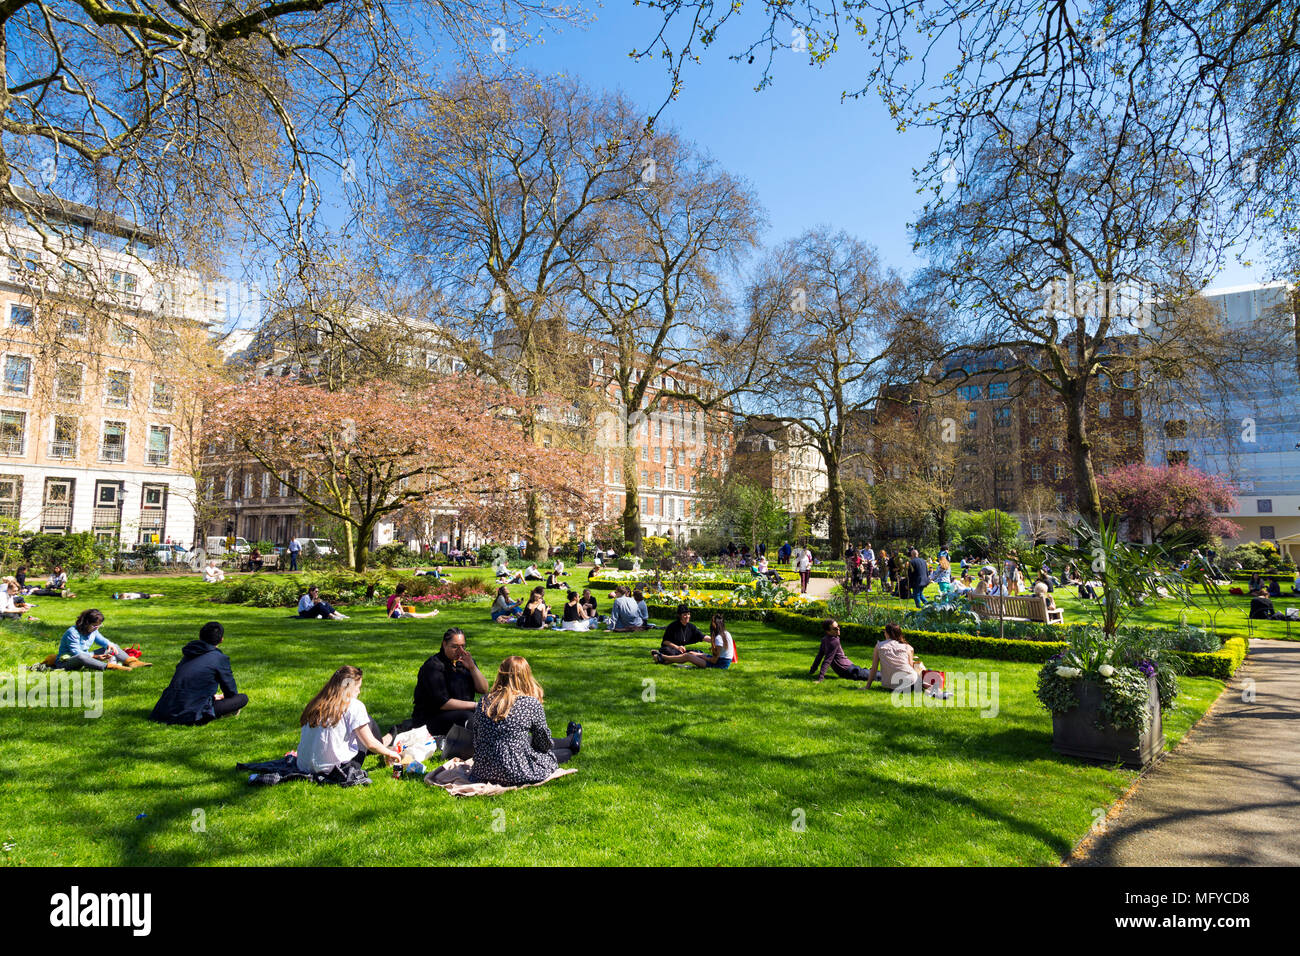 La Gente seduta sul prato e mangiare il pranzo in un piccolo parco cittadino, St James's Square Garden, Londra, Regno Unito Foto Stock